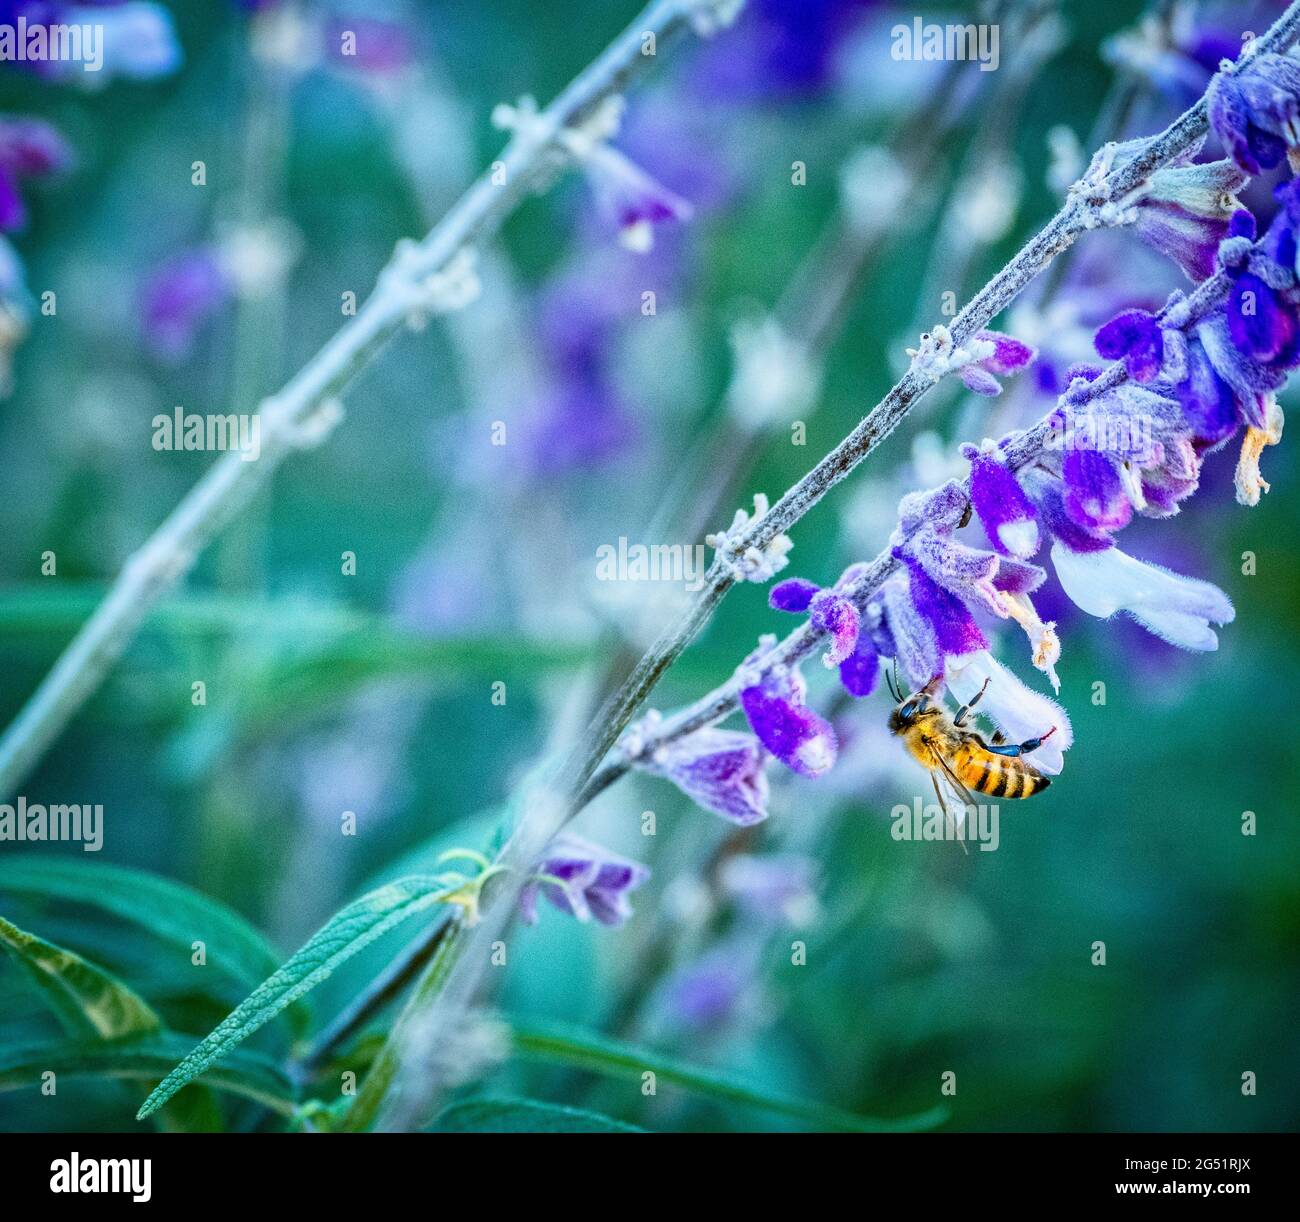 Primer plano de abeja de miel en flor púrpura Foto de stock